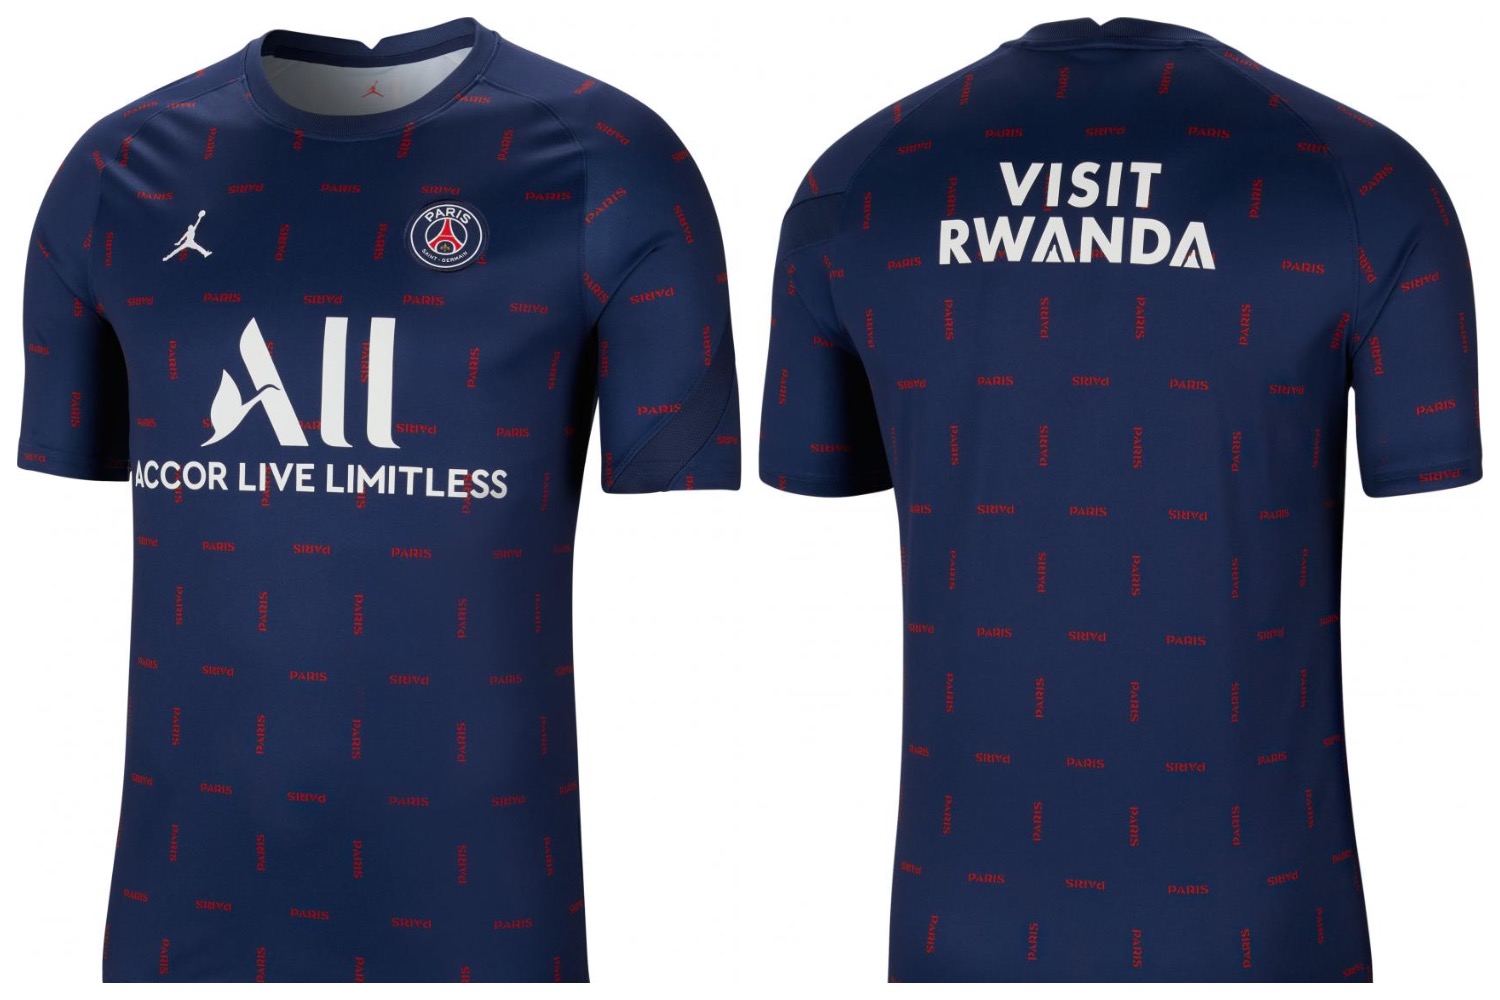 Le PSG dévoile le troisième maillot de la saison 2021-22 - France Bleu